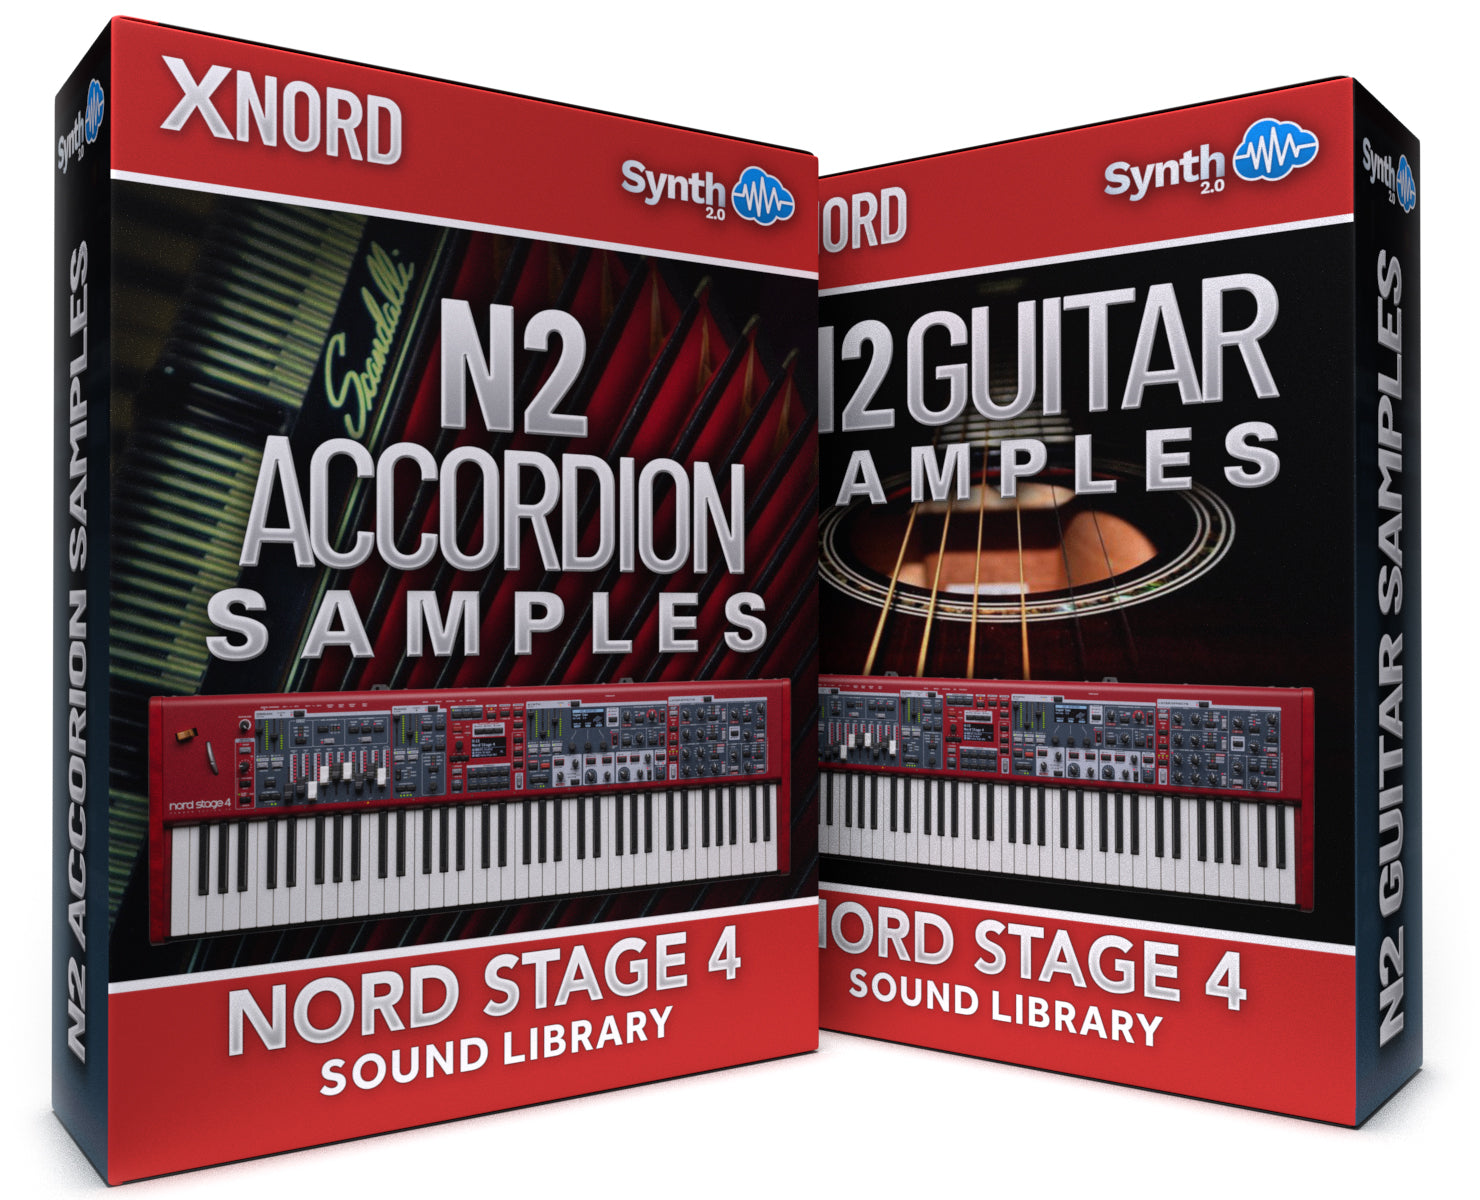 SCL134 - ( Bundle ) - N2 Accordion Samples + N2 Guitar Samples - Nord Stage 4